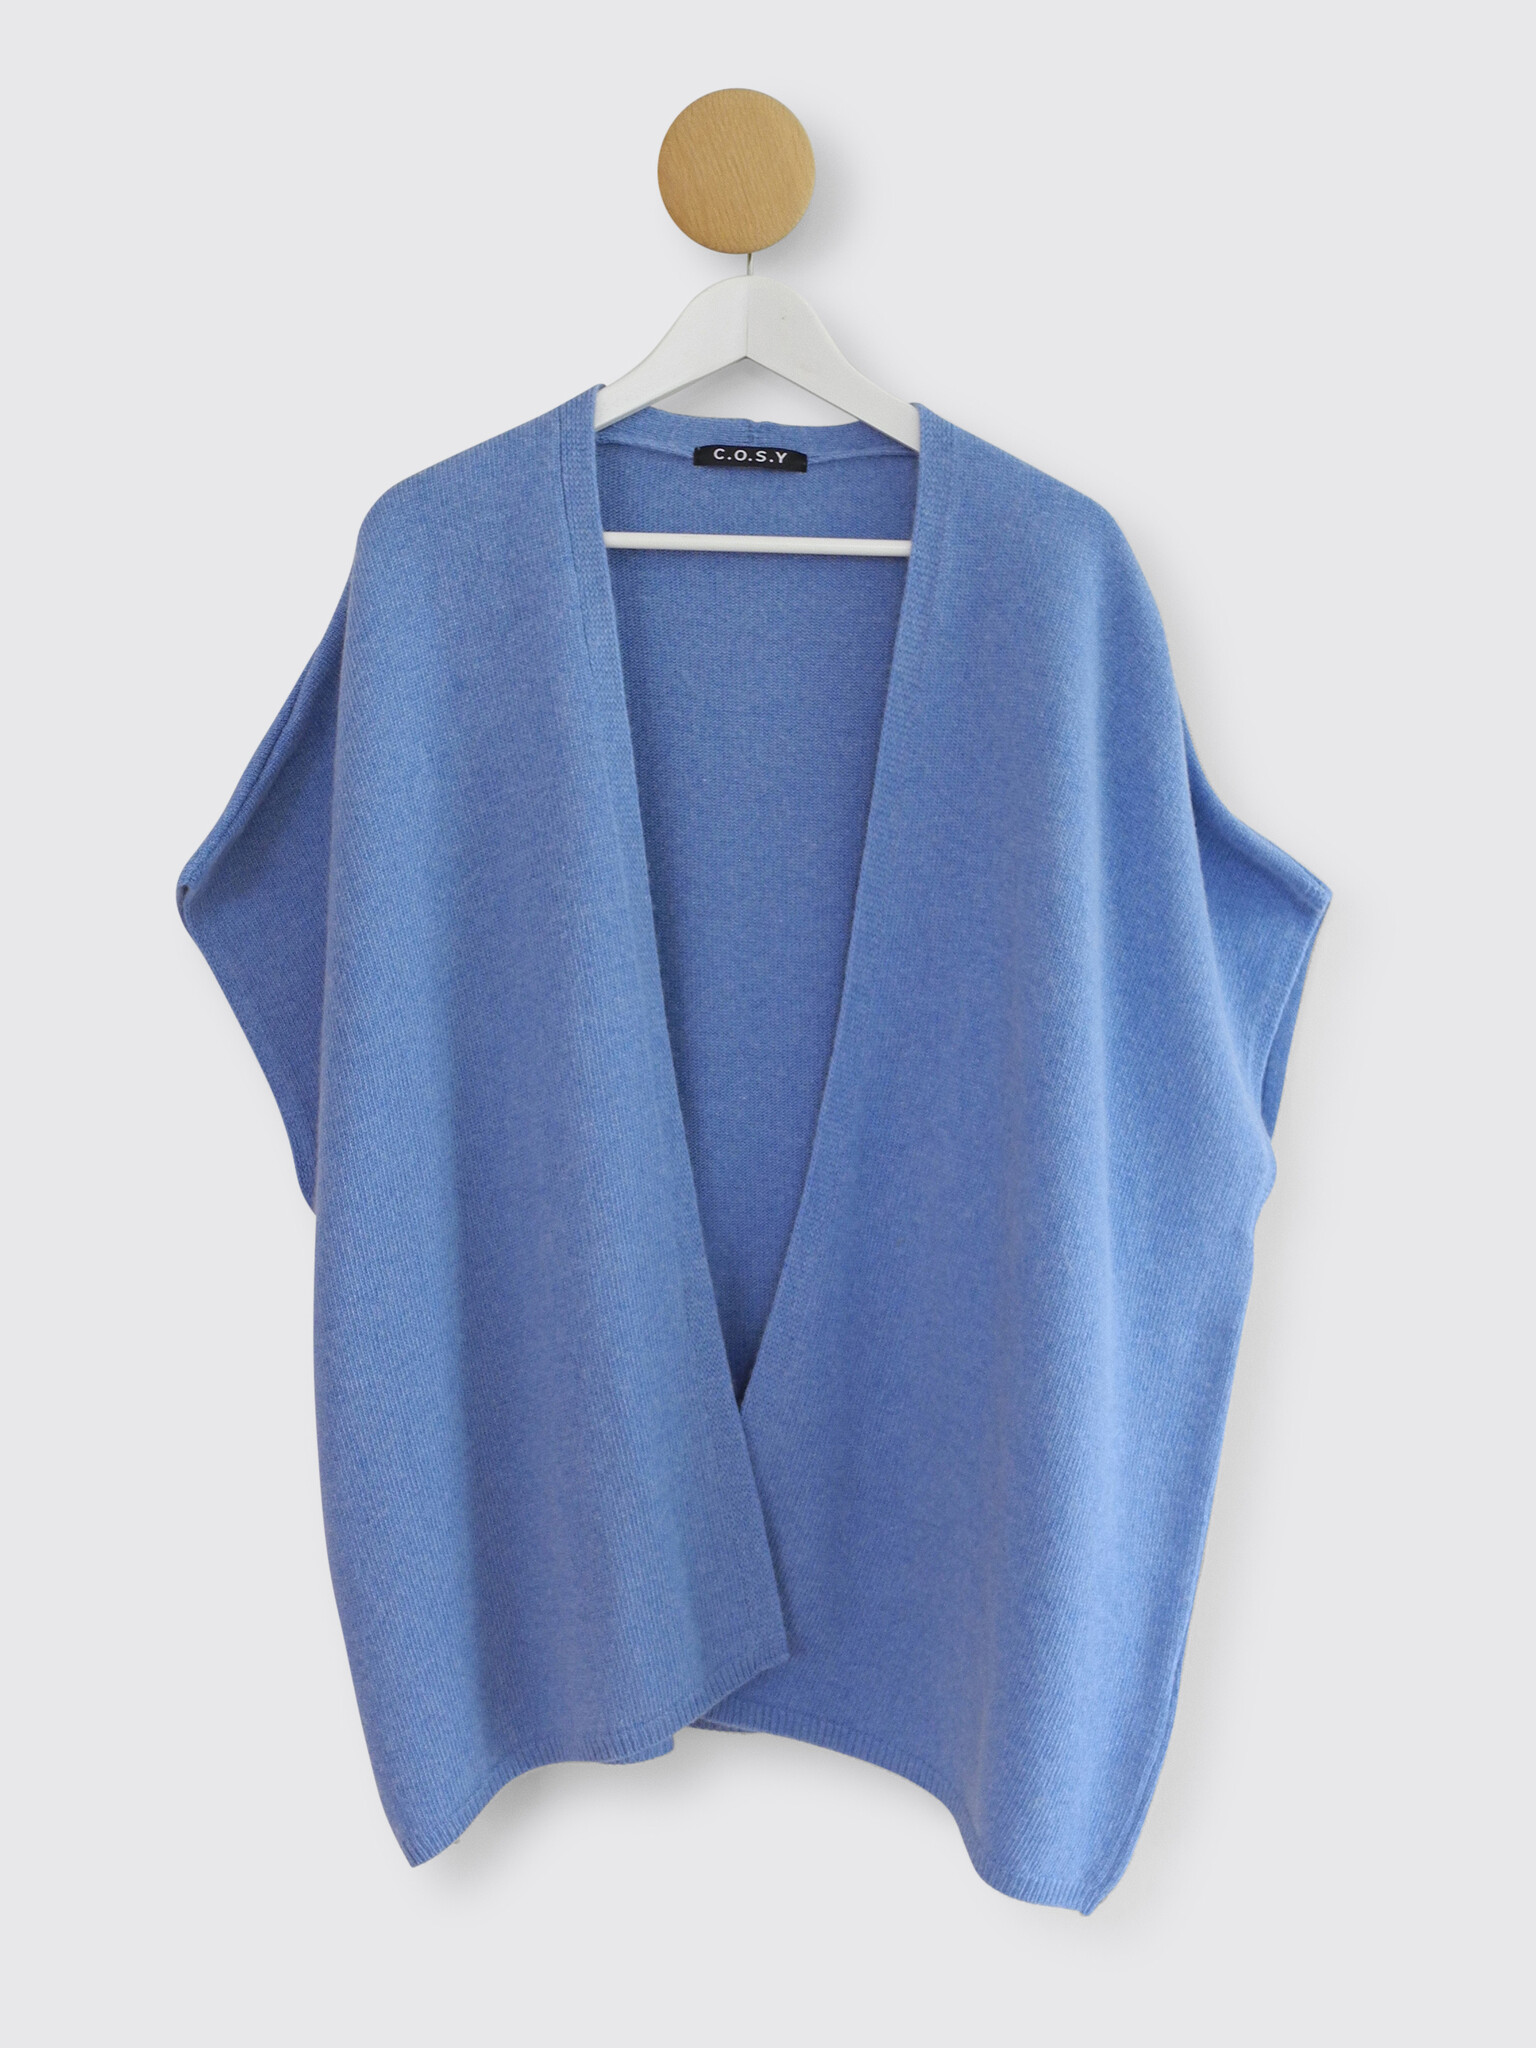 Womens Cape Blazer Split Sleeve Open Front Casual Jacket Coat Workwear  Outwear | eBay